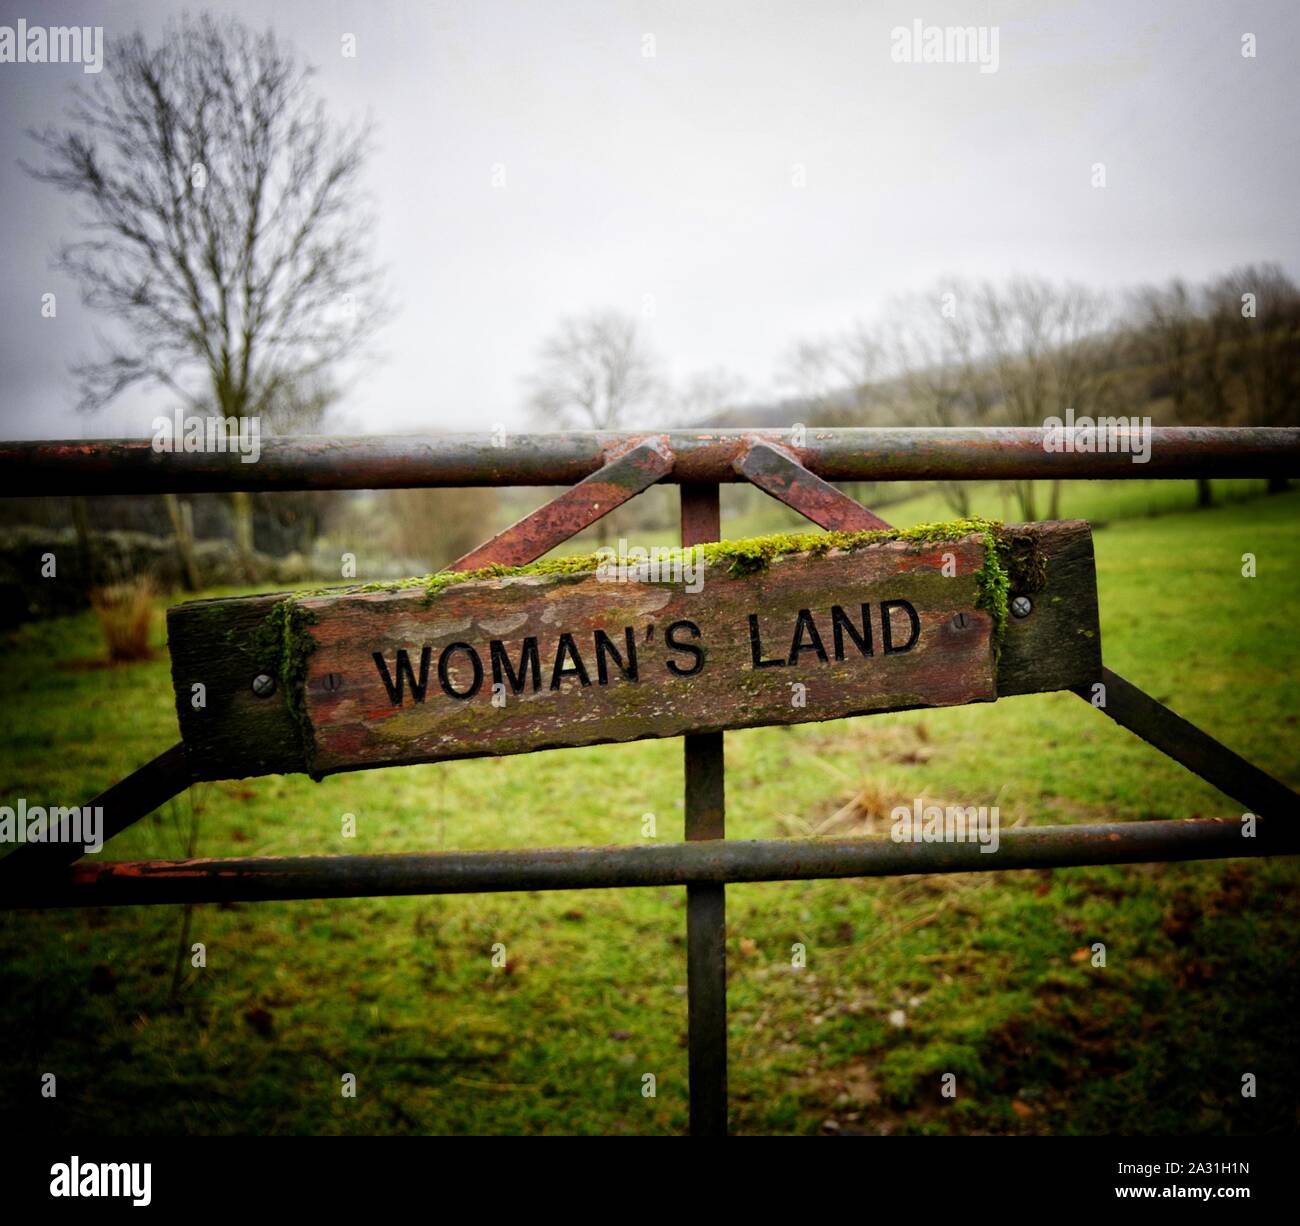 Woman's Land. Ein Landwirte Feld Tor unterzeichnen. ungewöhnliche und witzige unterzeichnen. Stockfoto